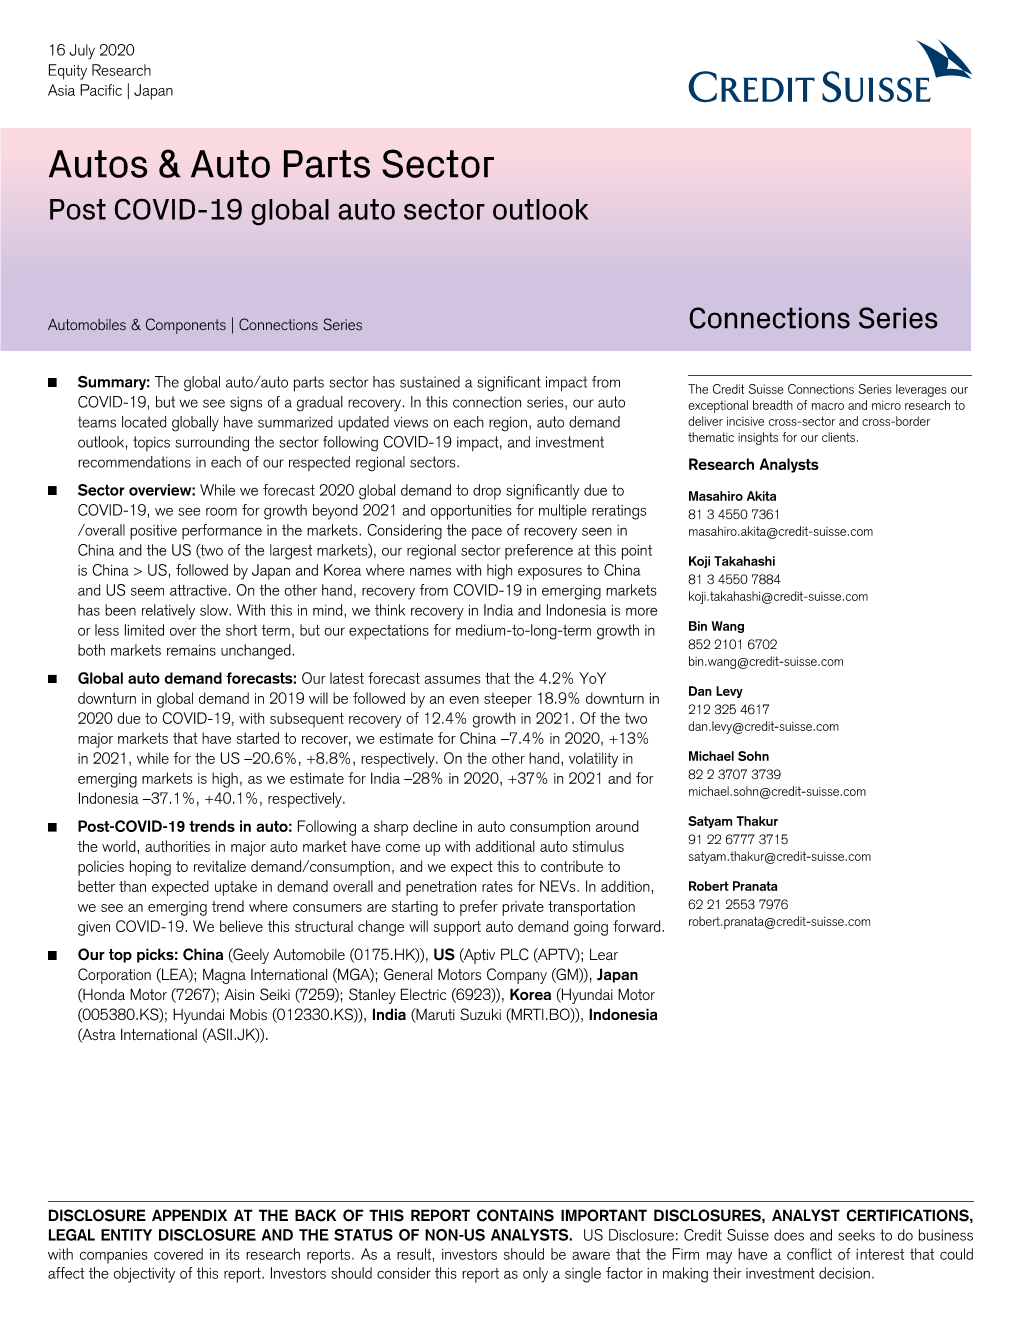 Autos & Auto Parts Sector